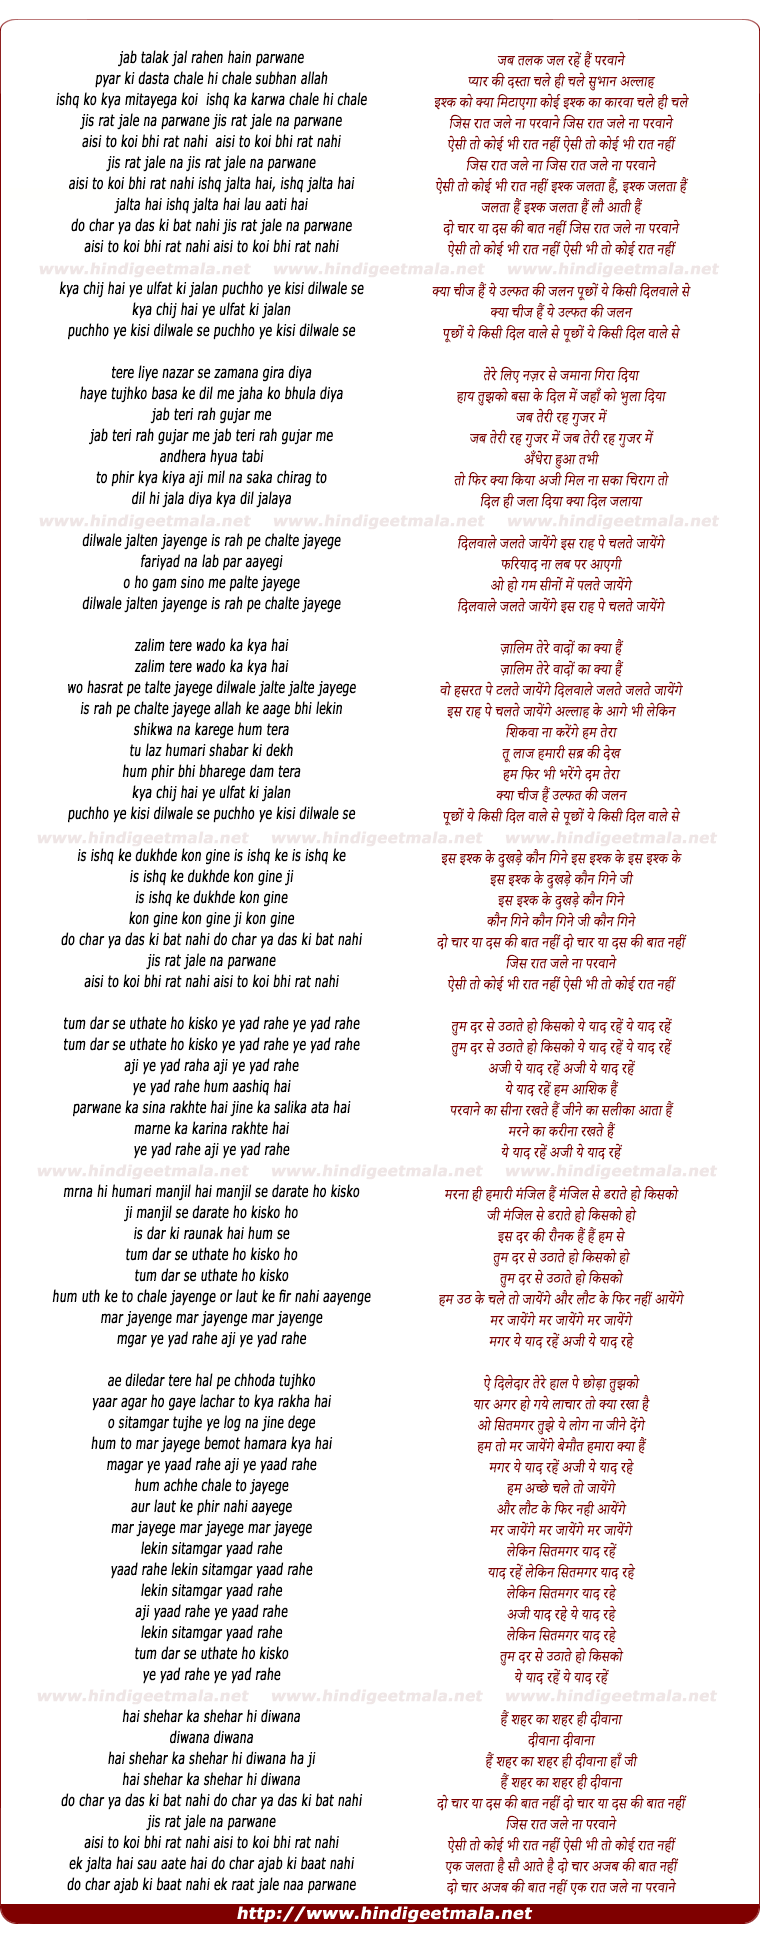 lyrics of song Jis Raat Jale Na Parwane, Aisi To Koi Bhi Raat Nahi